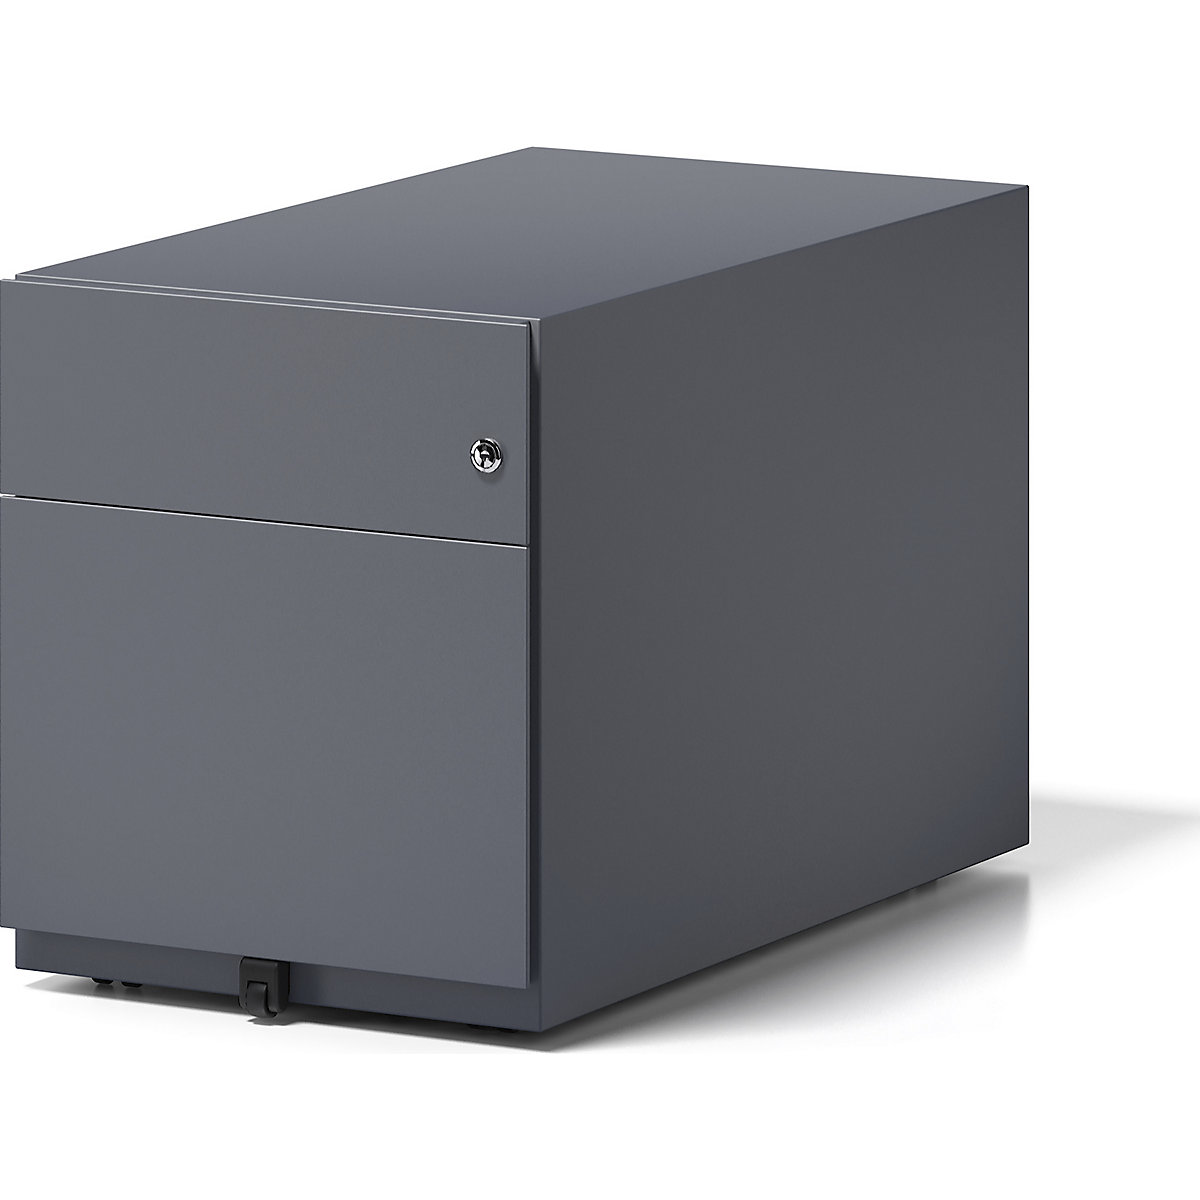 BISLEY – Pojízdný kontejner Note™, s 1 kartotékou pro závěsné složky a 1 univerzální zásuvkou, v x š x h 495 x 420 x 775 mm, s úchopnou lištou, antracitová šedá